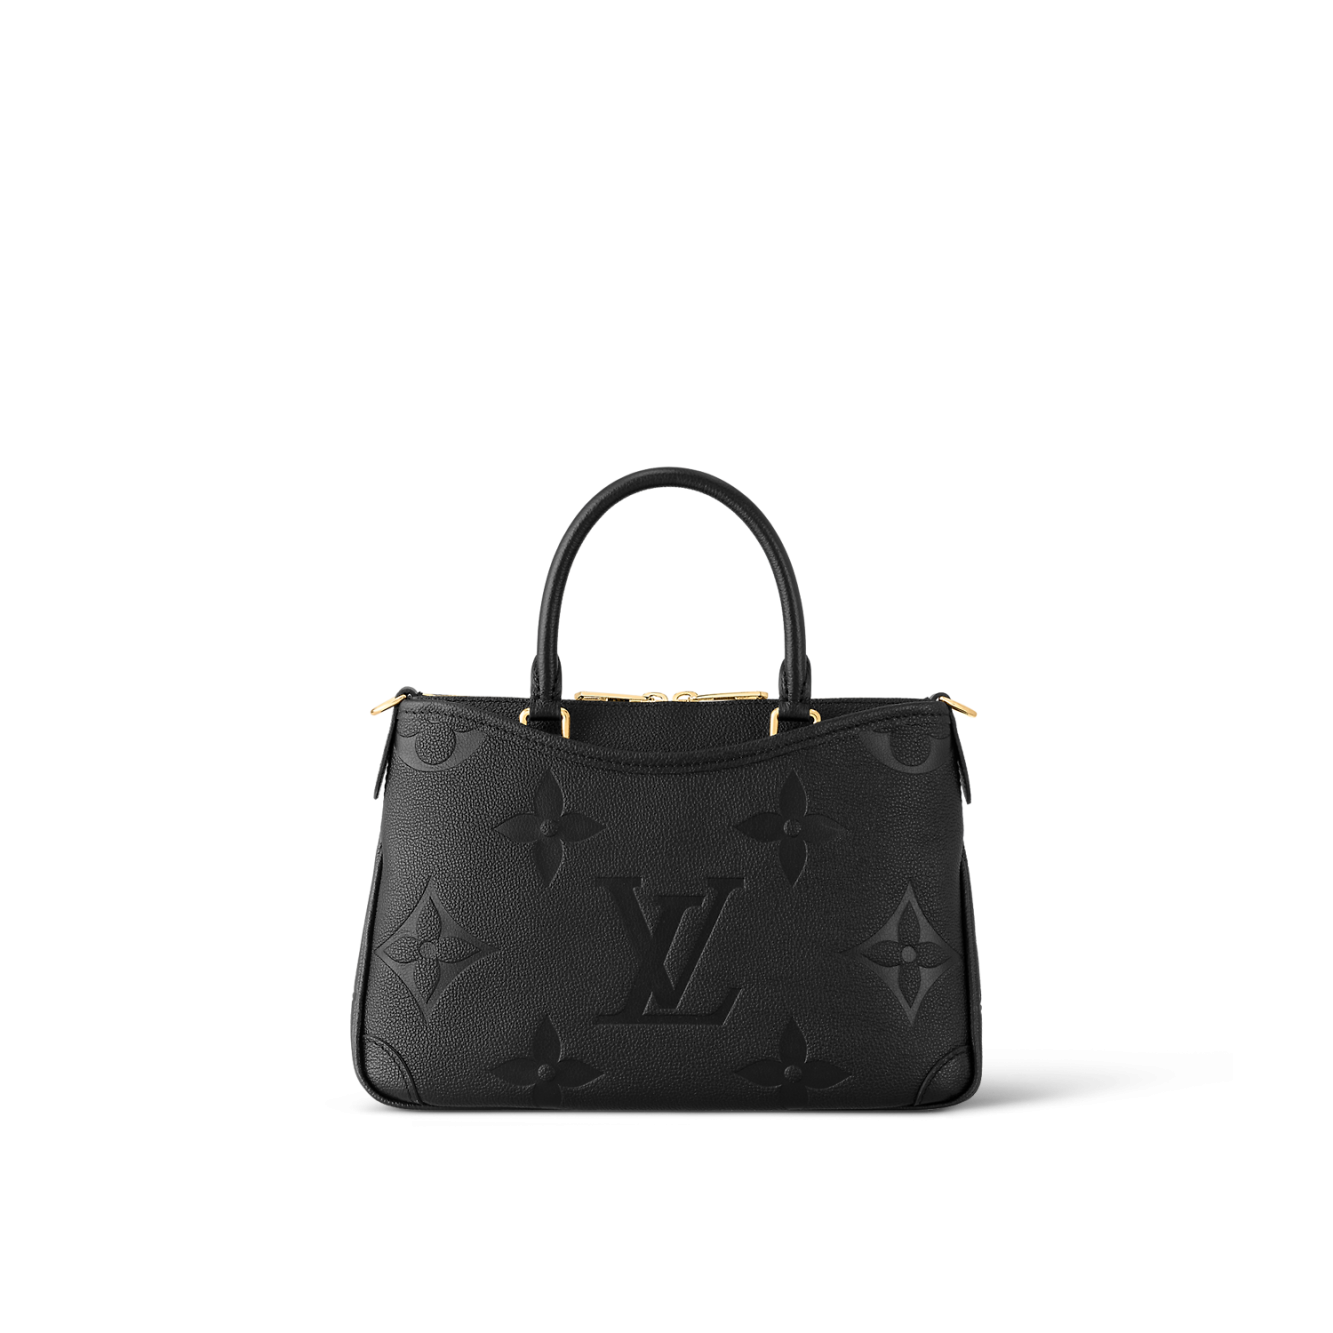 Louis Vuitton x Comme des Garcons Monogram Cut Out Carryall Travel